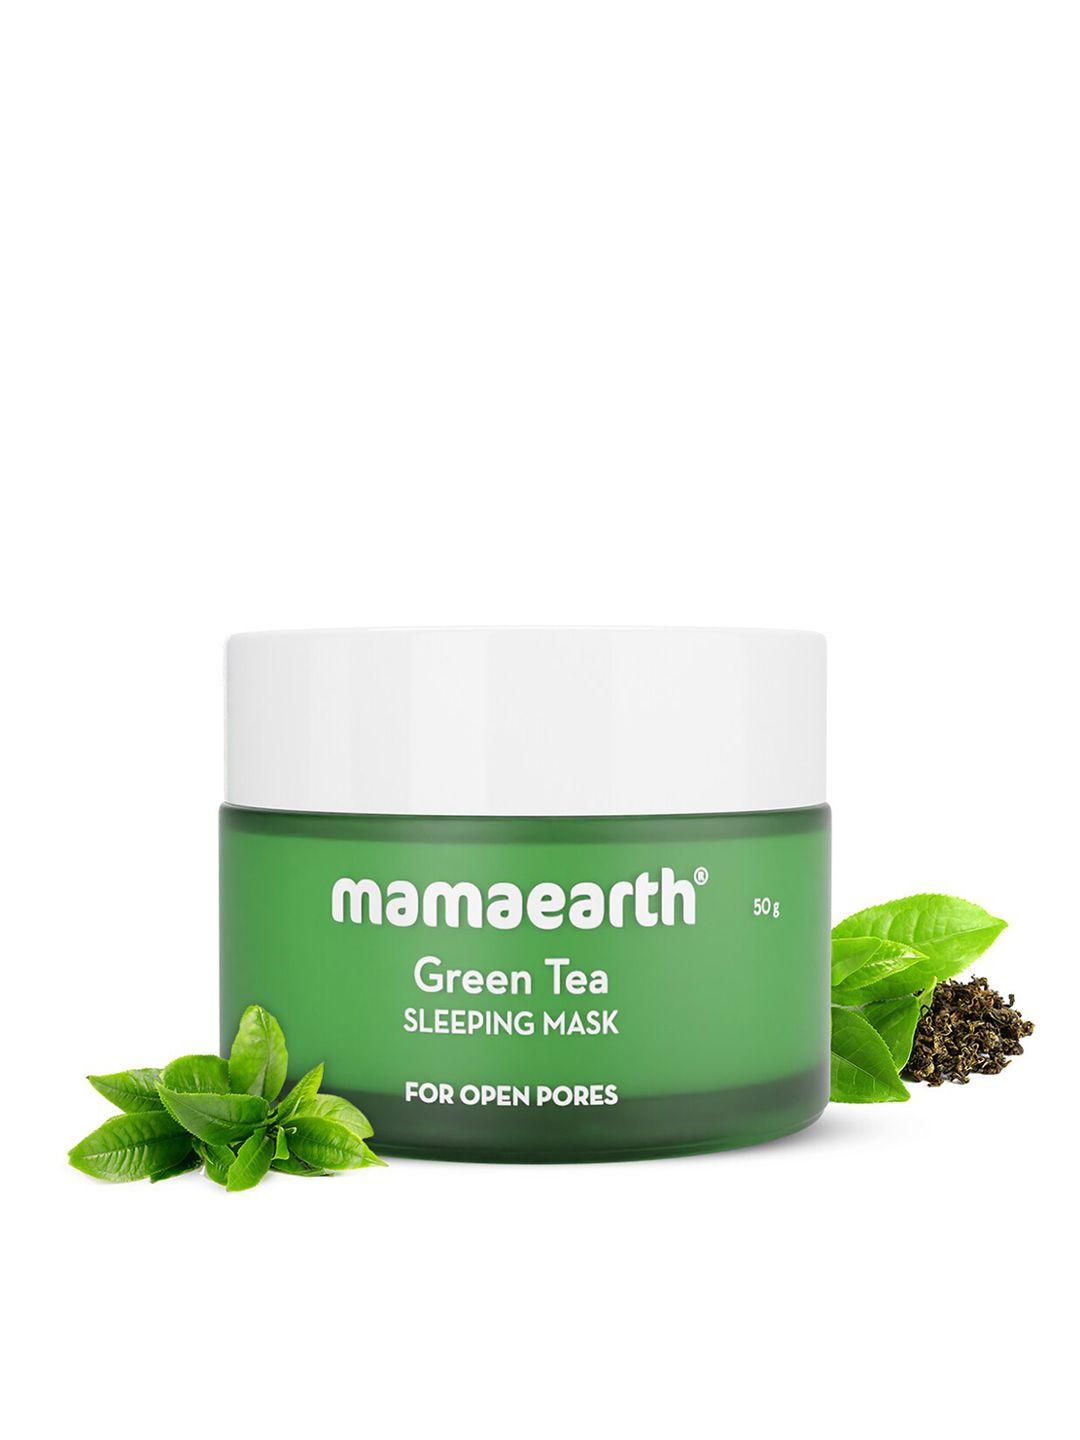 mamaearth green tea sleeping mask 50 g